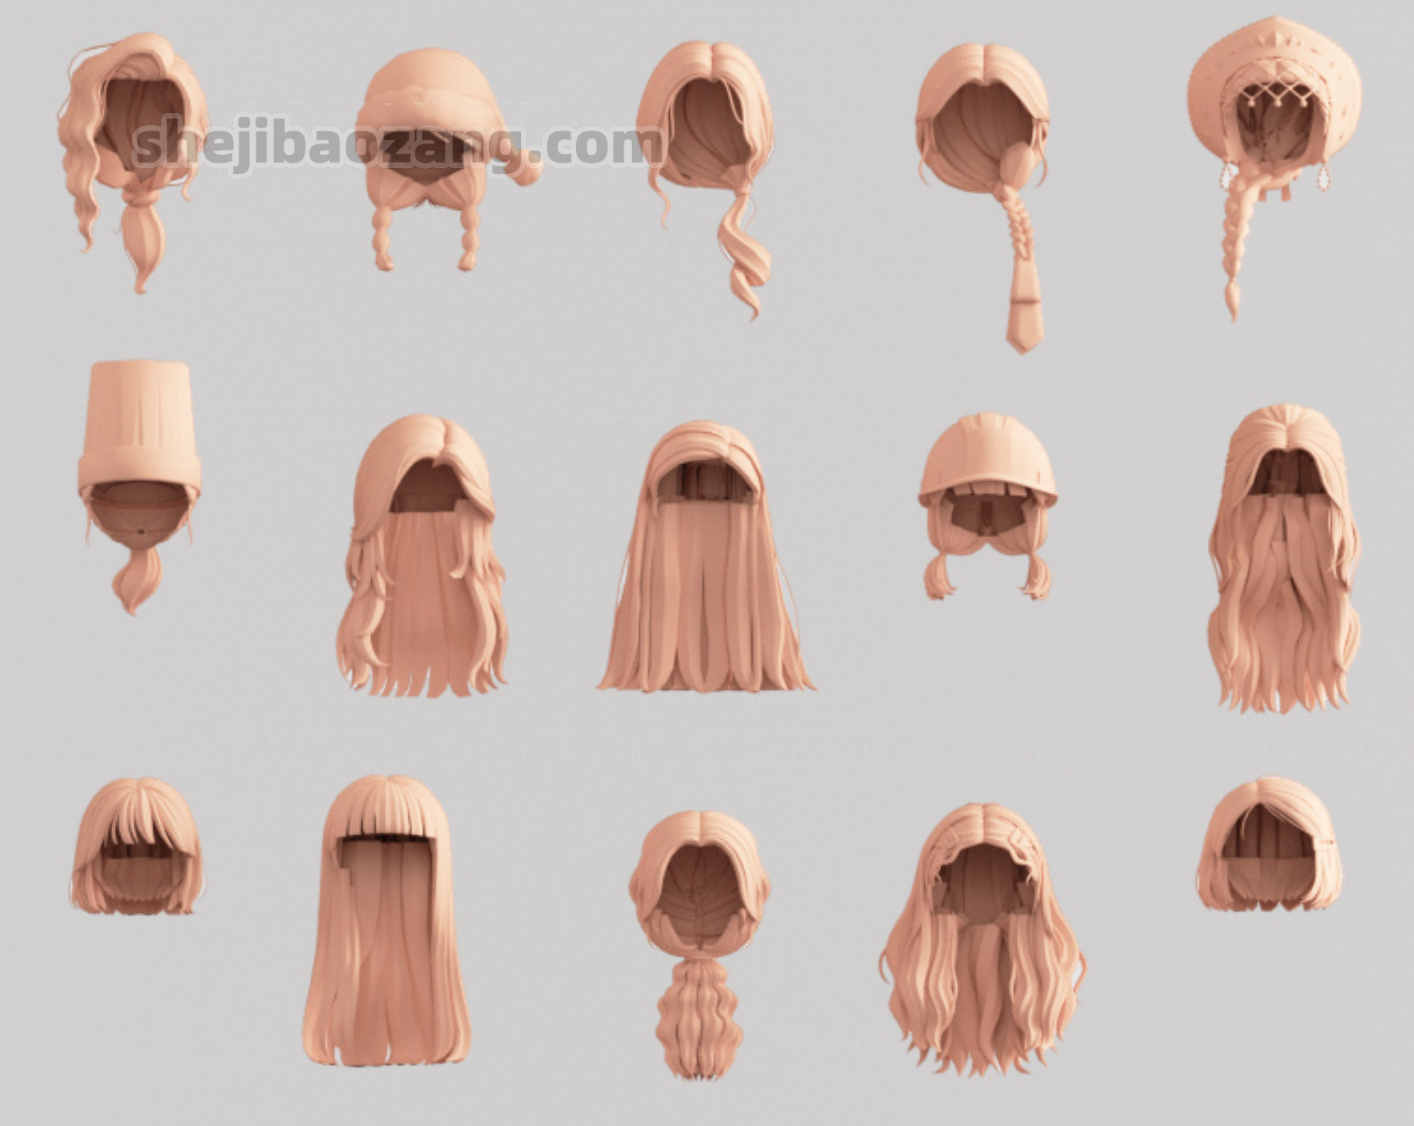 【素材】700+女性头发发型模型集合（3.8G） - 哔哩哔哩